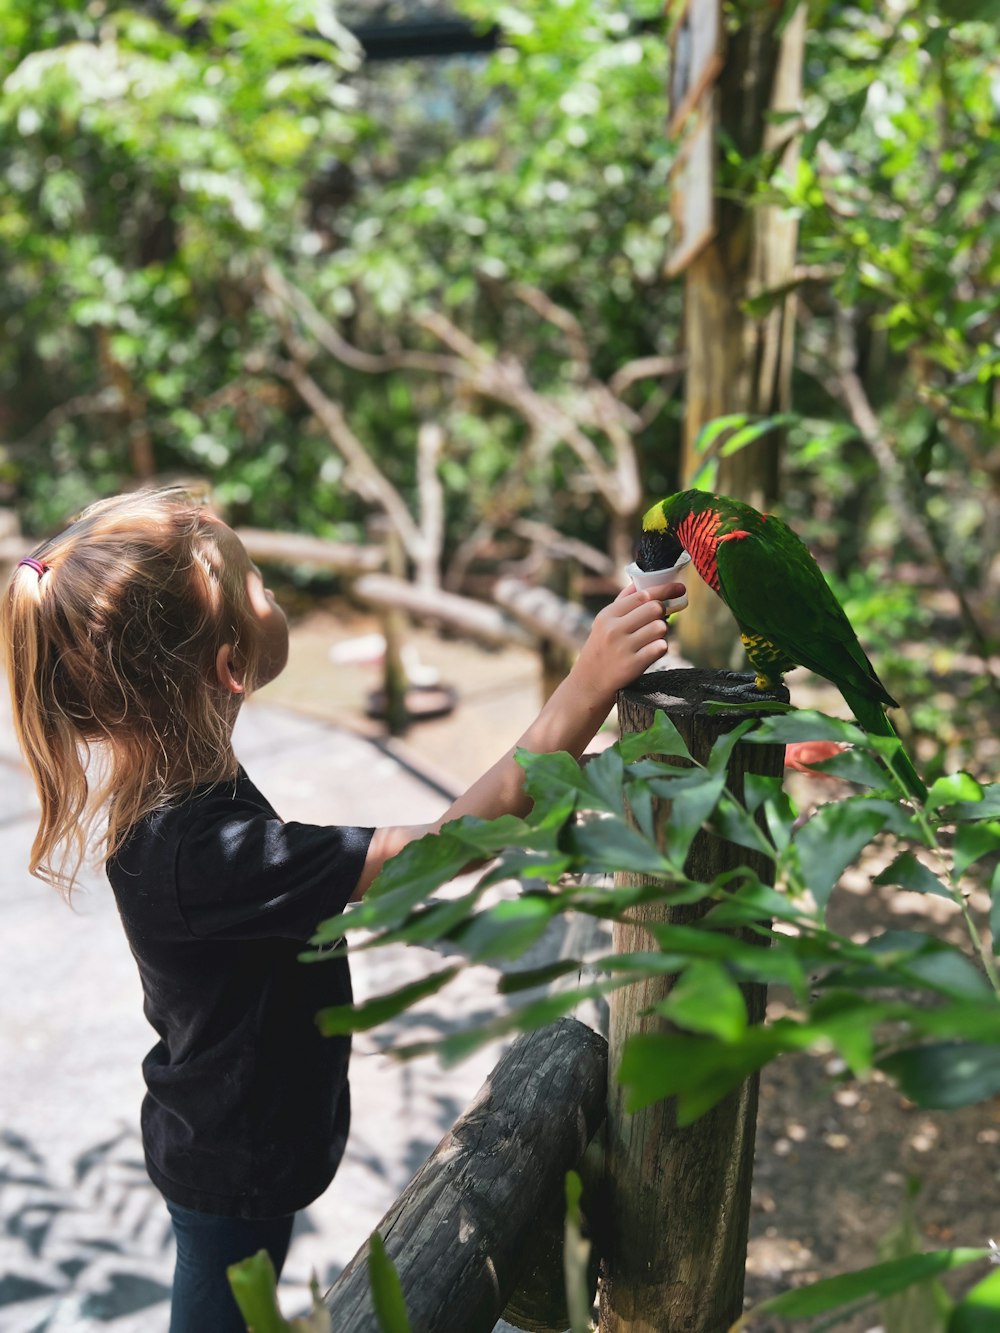 a little girl petting a green bird on a stick